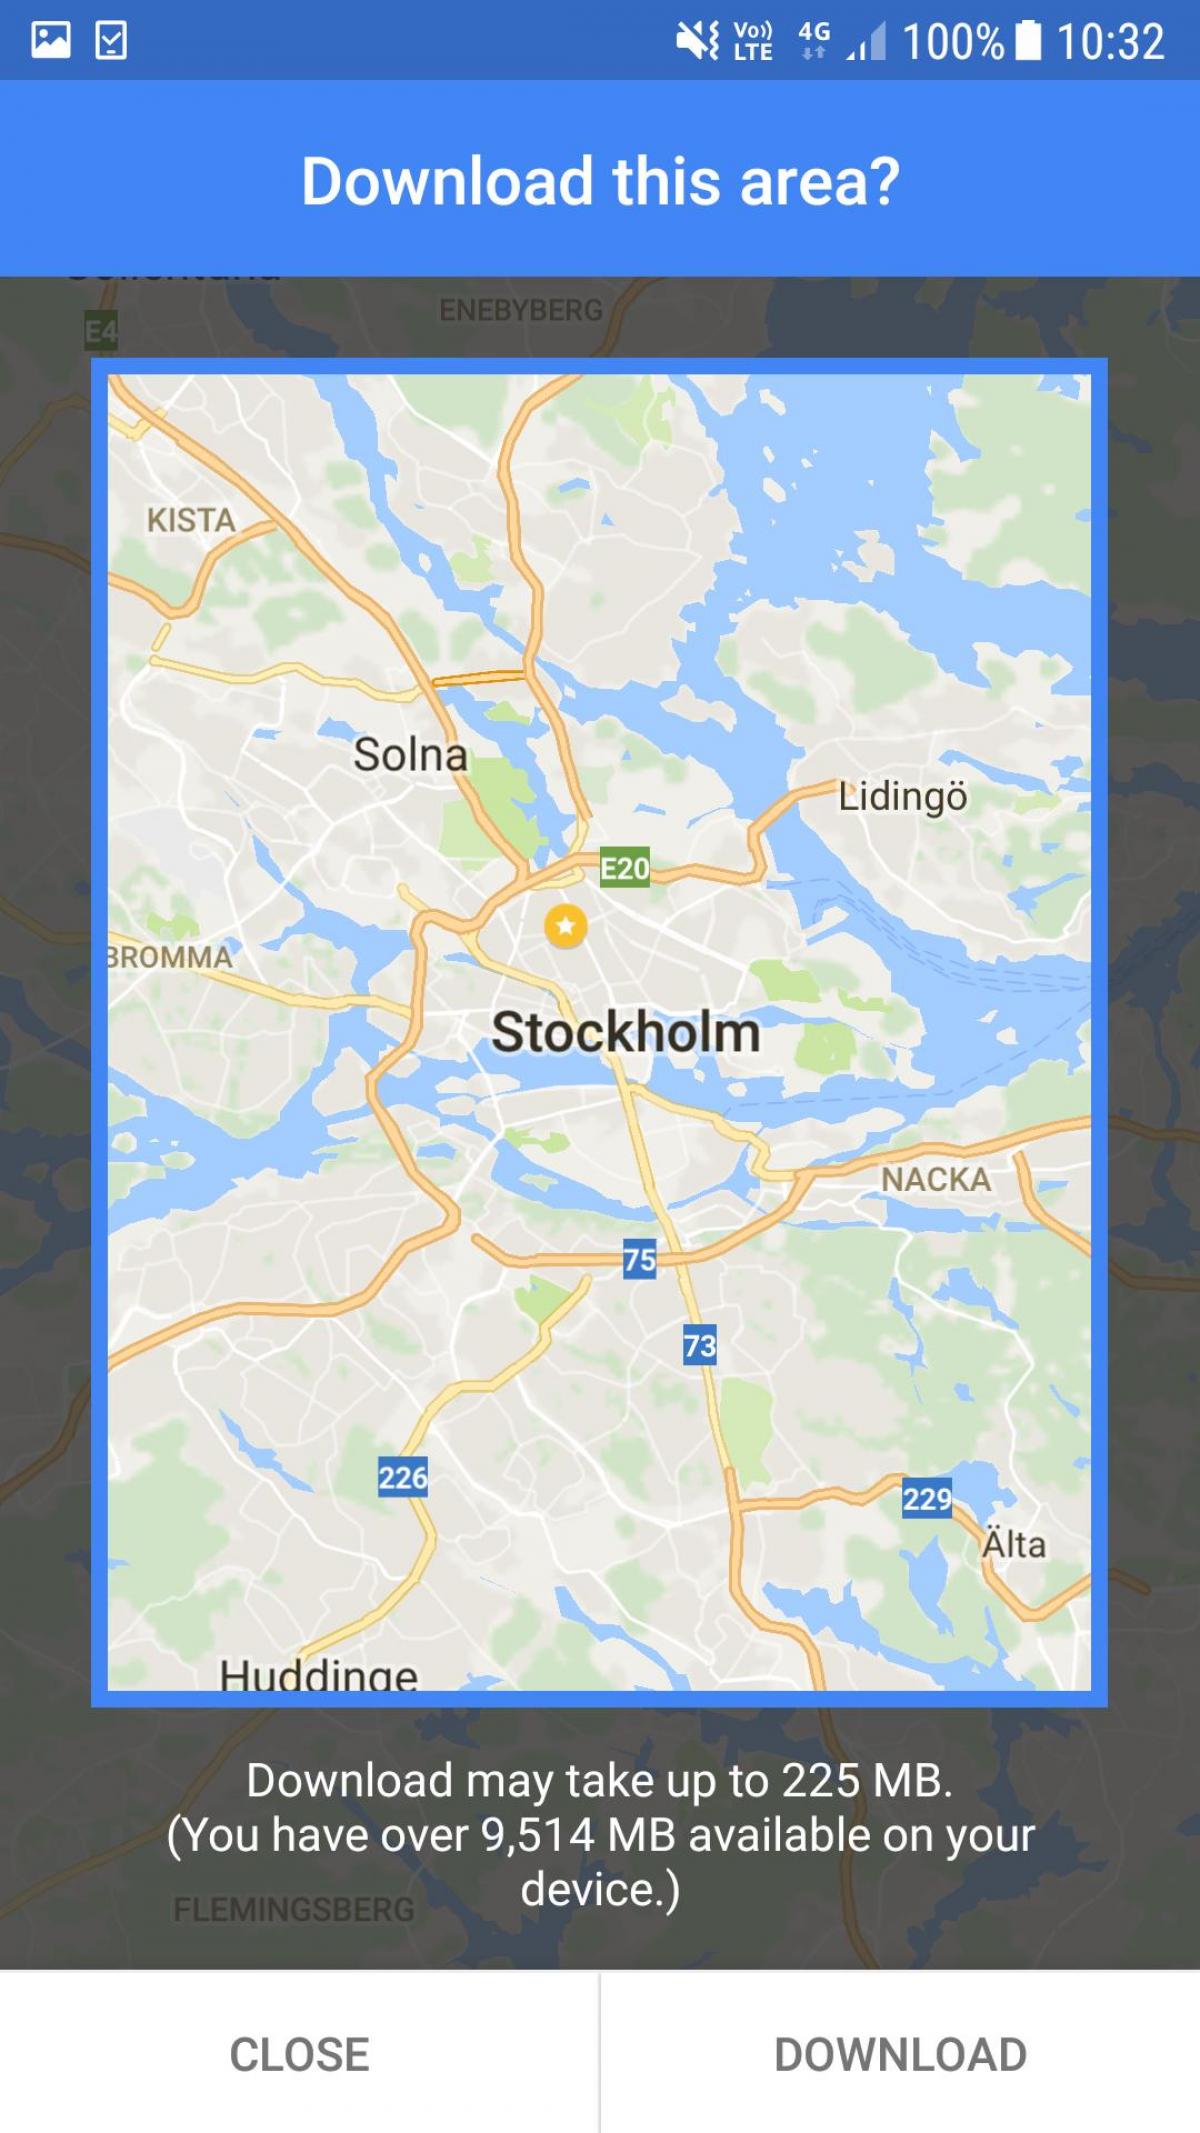 օֆլայն քարտեզ Ստոկհոլմում